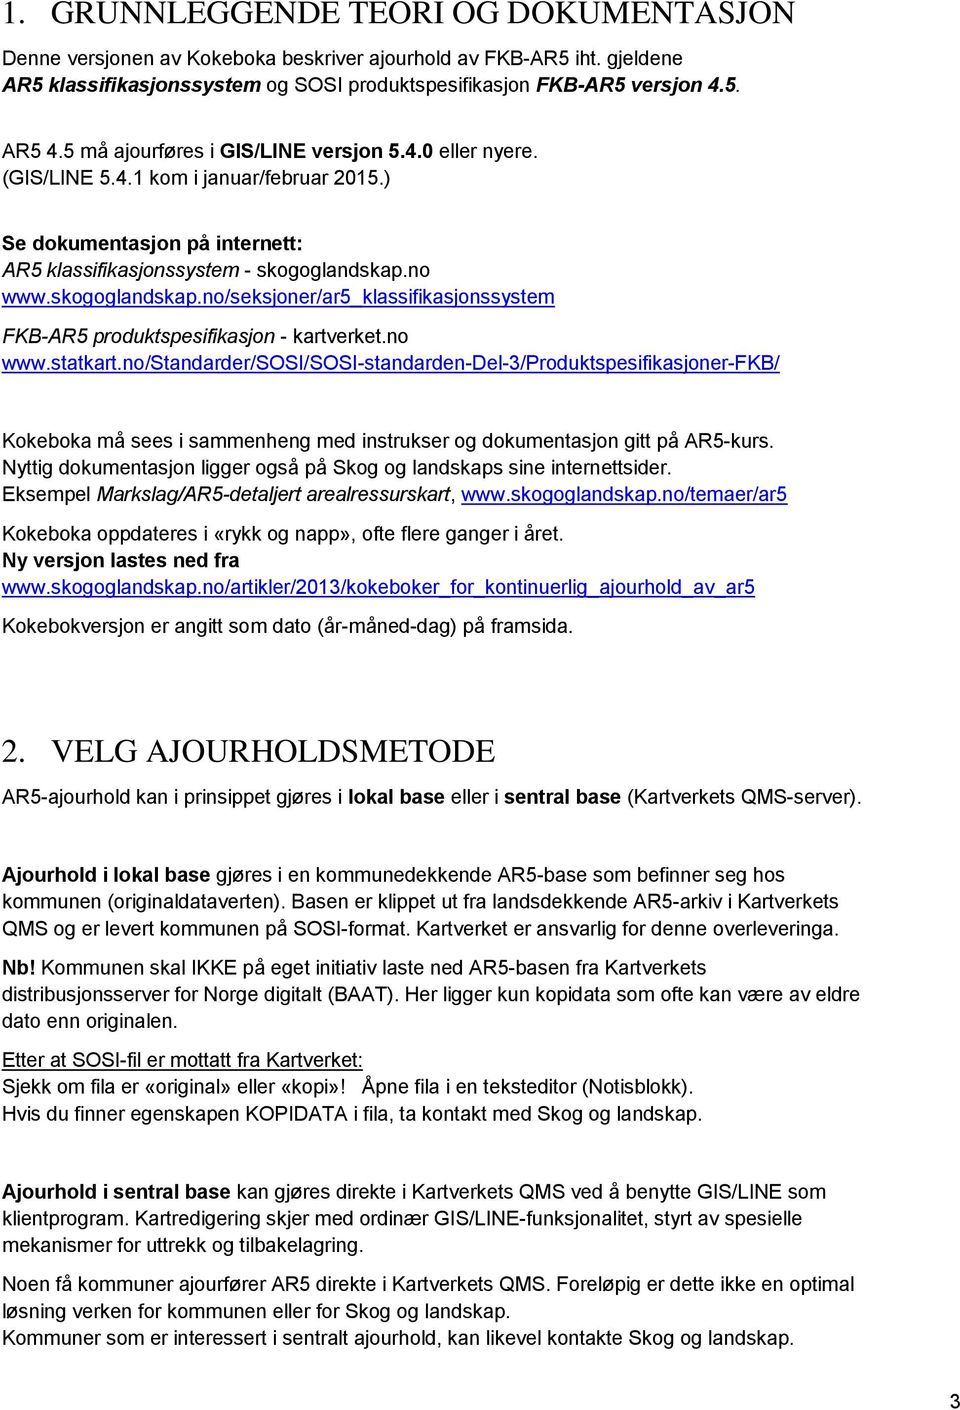 no www.skogoglandskap.no/seksjoner/ar5_klassifikasjonssystem FKB-AR5 produktspesifikasjon - kartverket.no www.statkart.